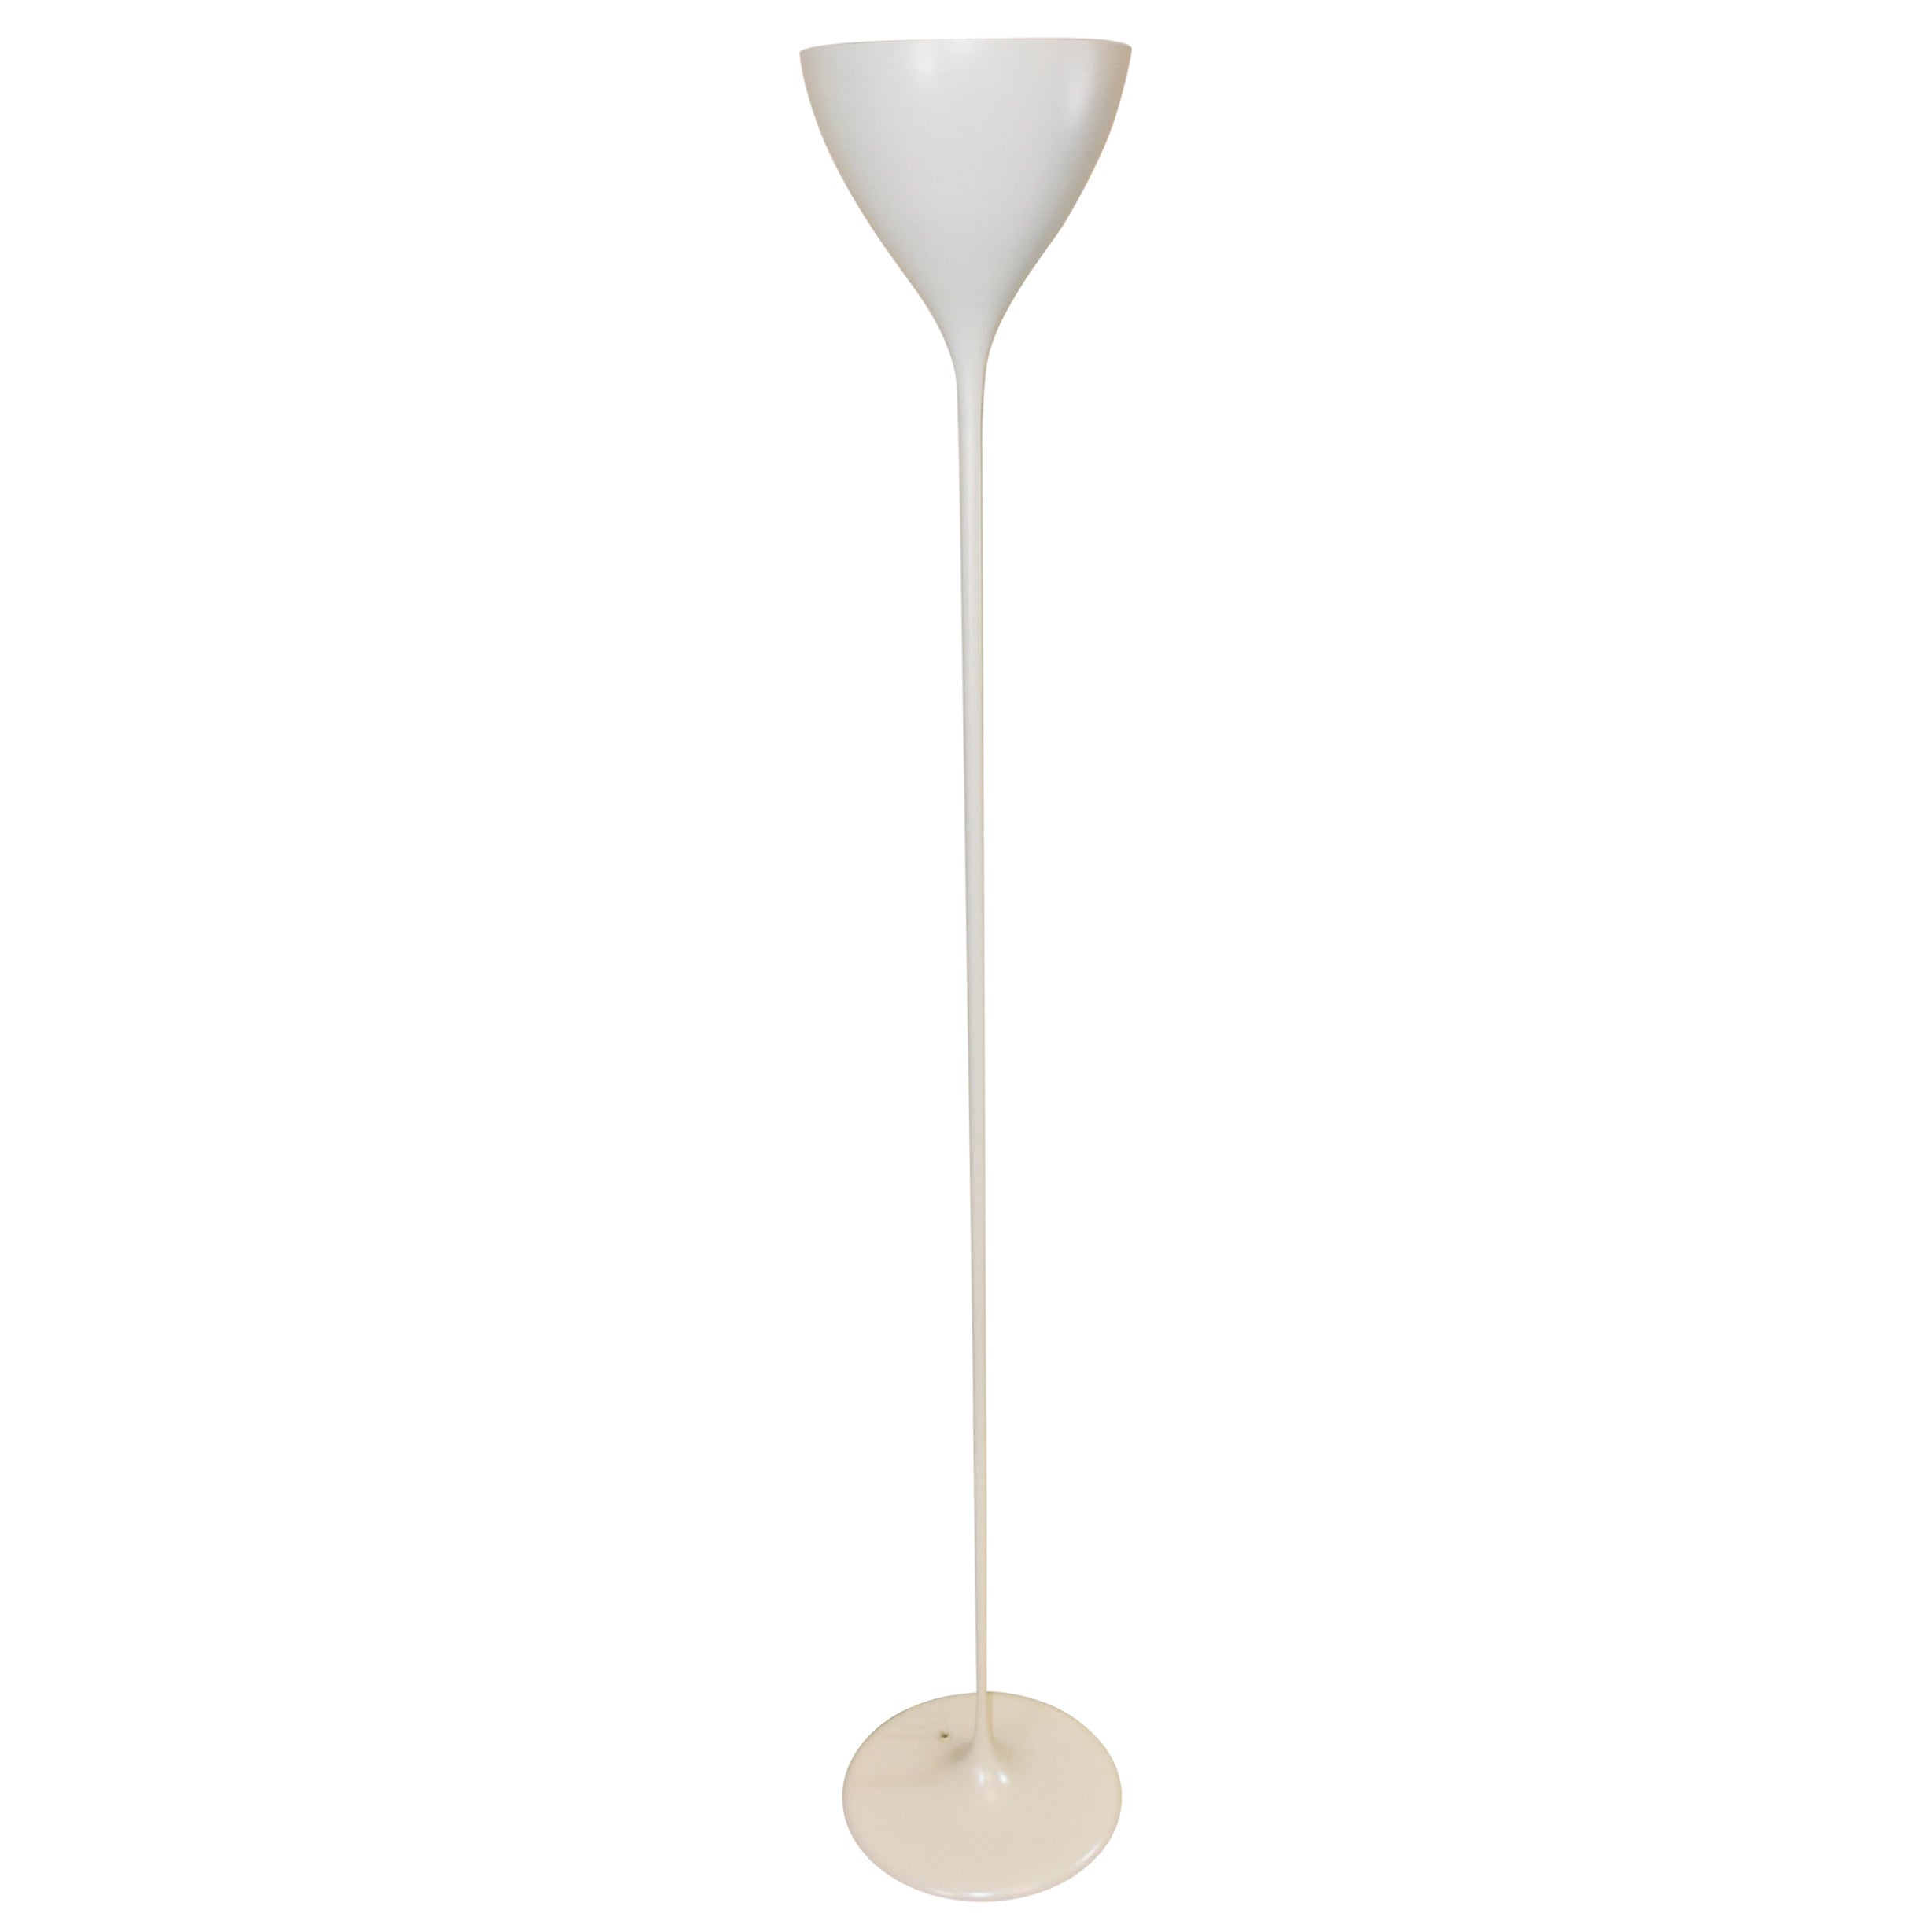 Max Bill Modern Tulip Form Floor Lamp